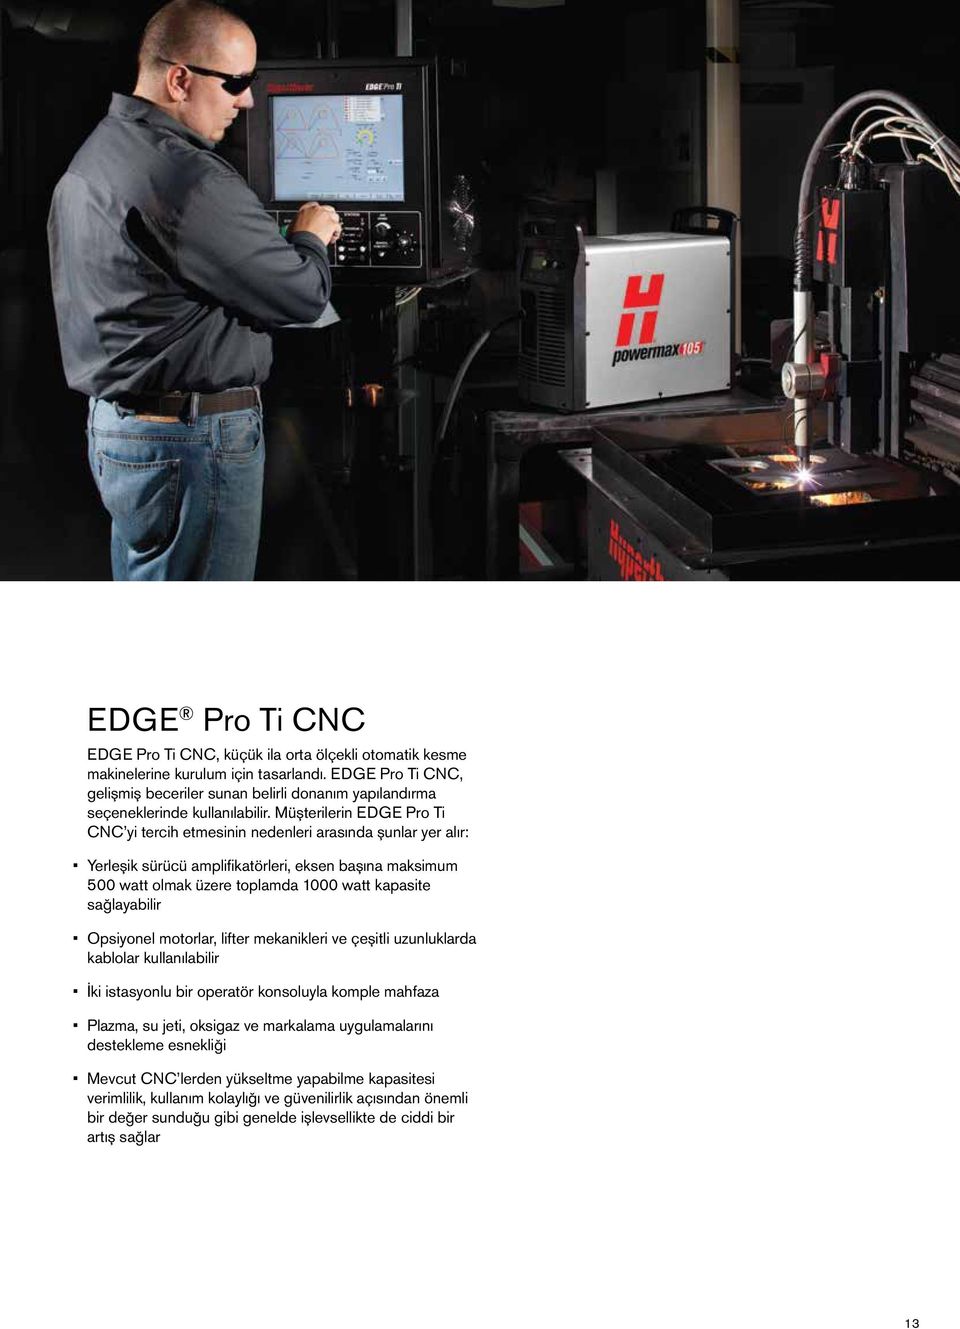 Müşterilerin EDGE Pro Ti CNC yi tercih etmesinin nedenleri arasında şunlar yer alır: Yerleşik sürücü amplifikatörleri, eksen başına maksimum 500 watt olmak üzere toplamda 1000 watt kapasite